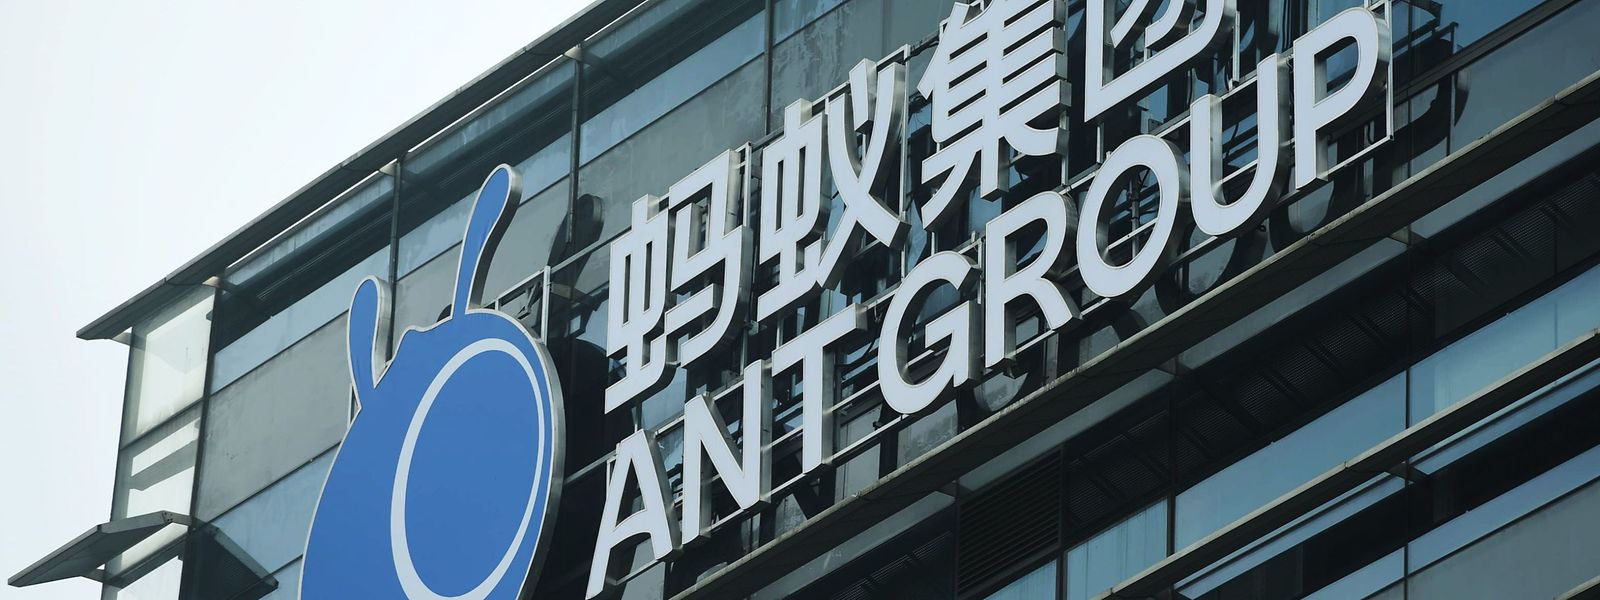 Ant Group betreibt in China nicht nur den mobilen Bezahldienst Alipay, sondern bietet auch Kredite, Versicherungen und Vermögensverwaltung an.